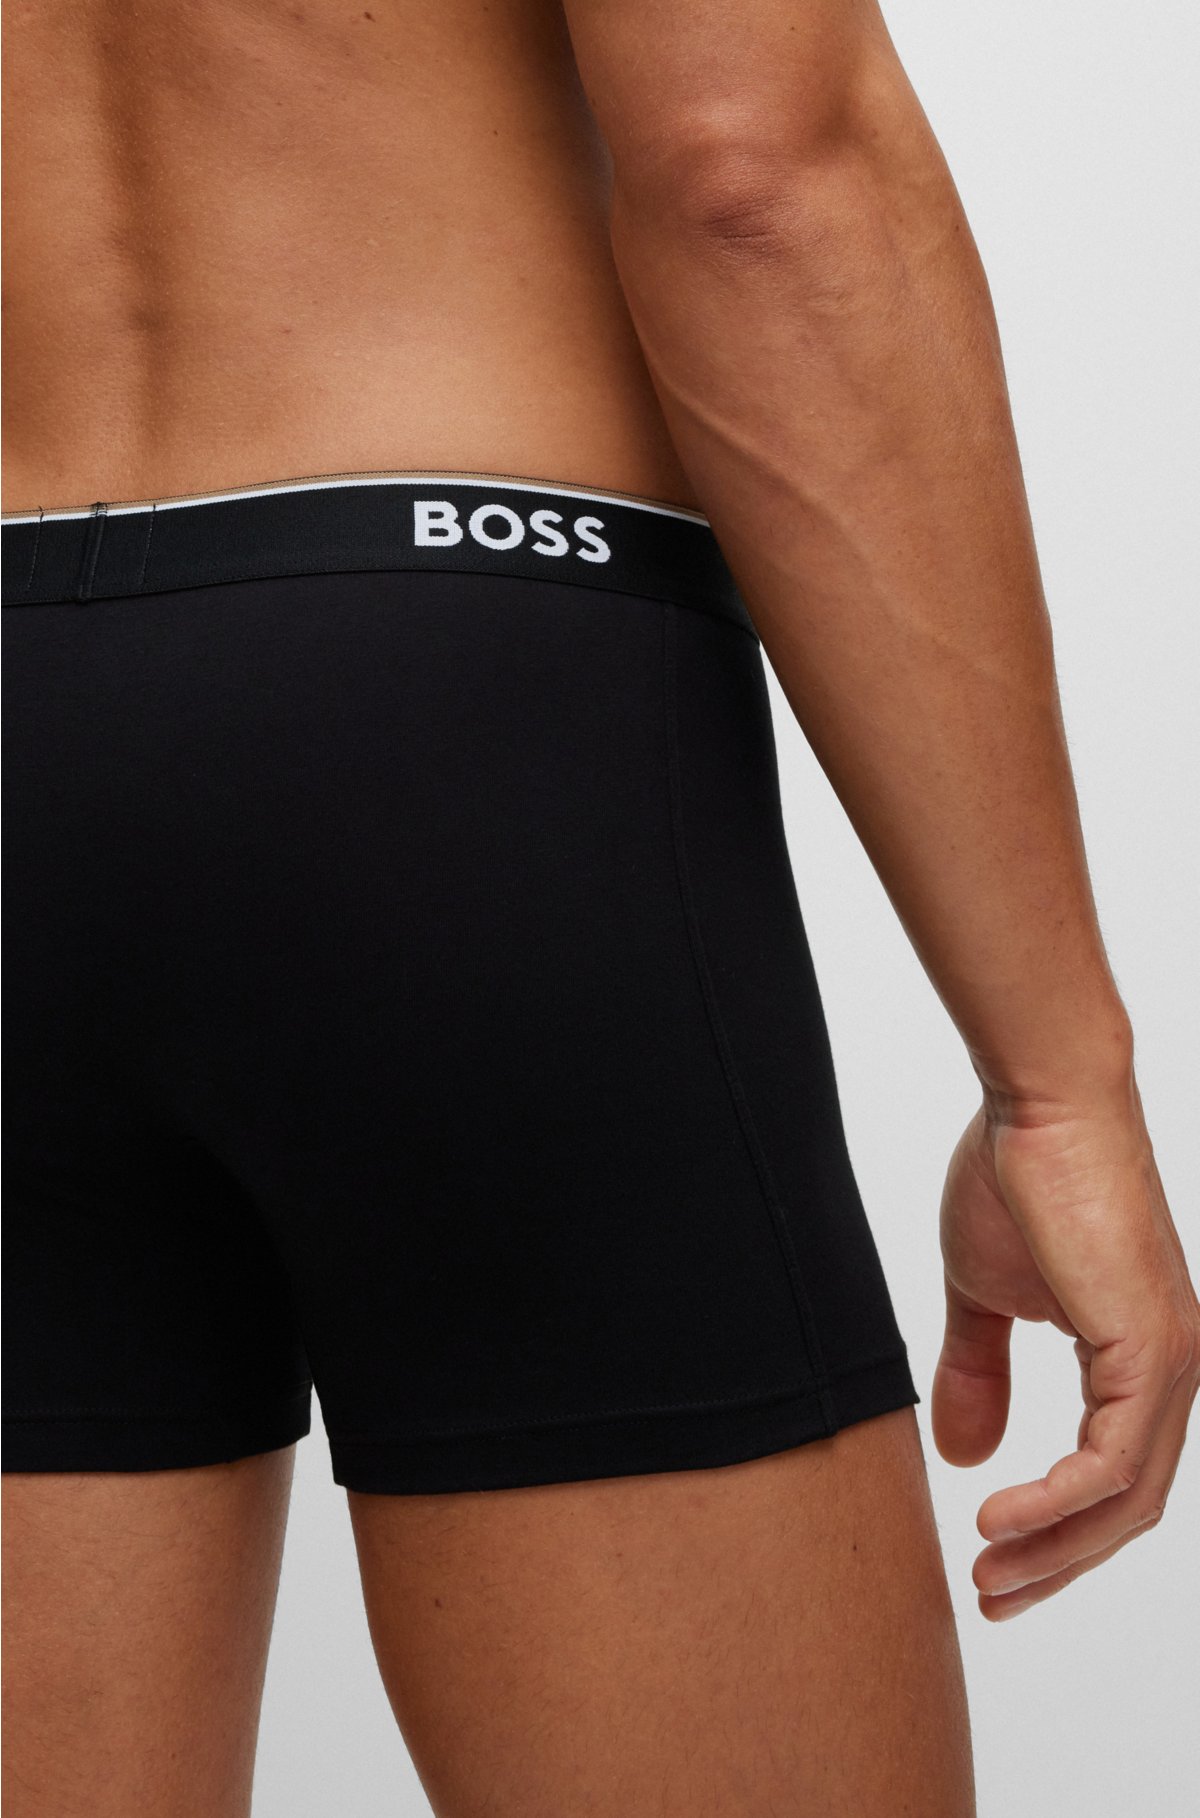 Men's Underwear Briefs 5-Pack Cotton Low Rise Multi Color Soft Underpant :  : Clothing, Shoes & Accessories